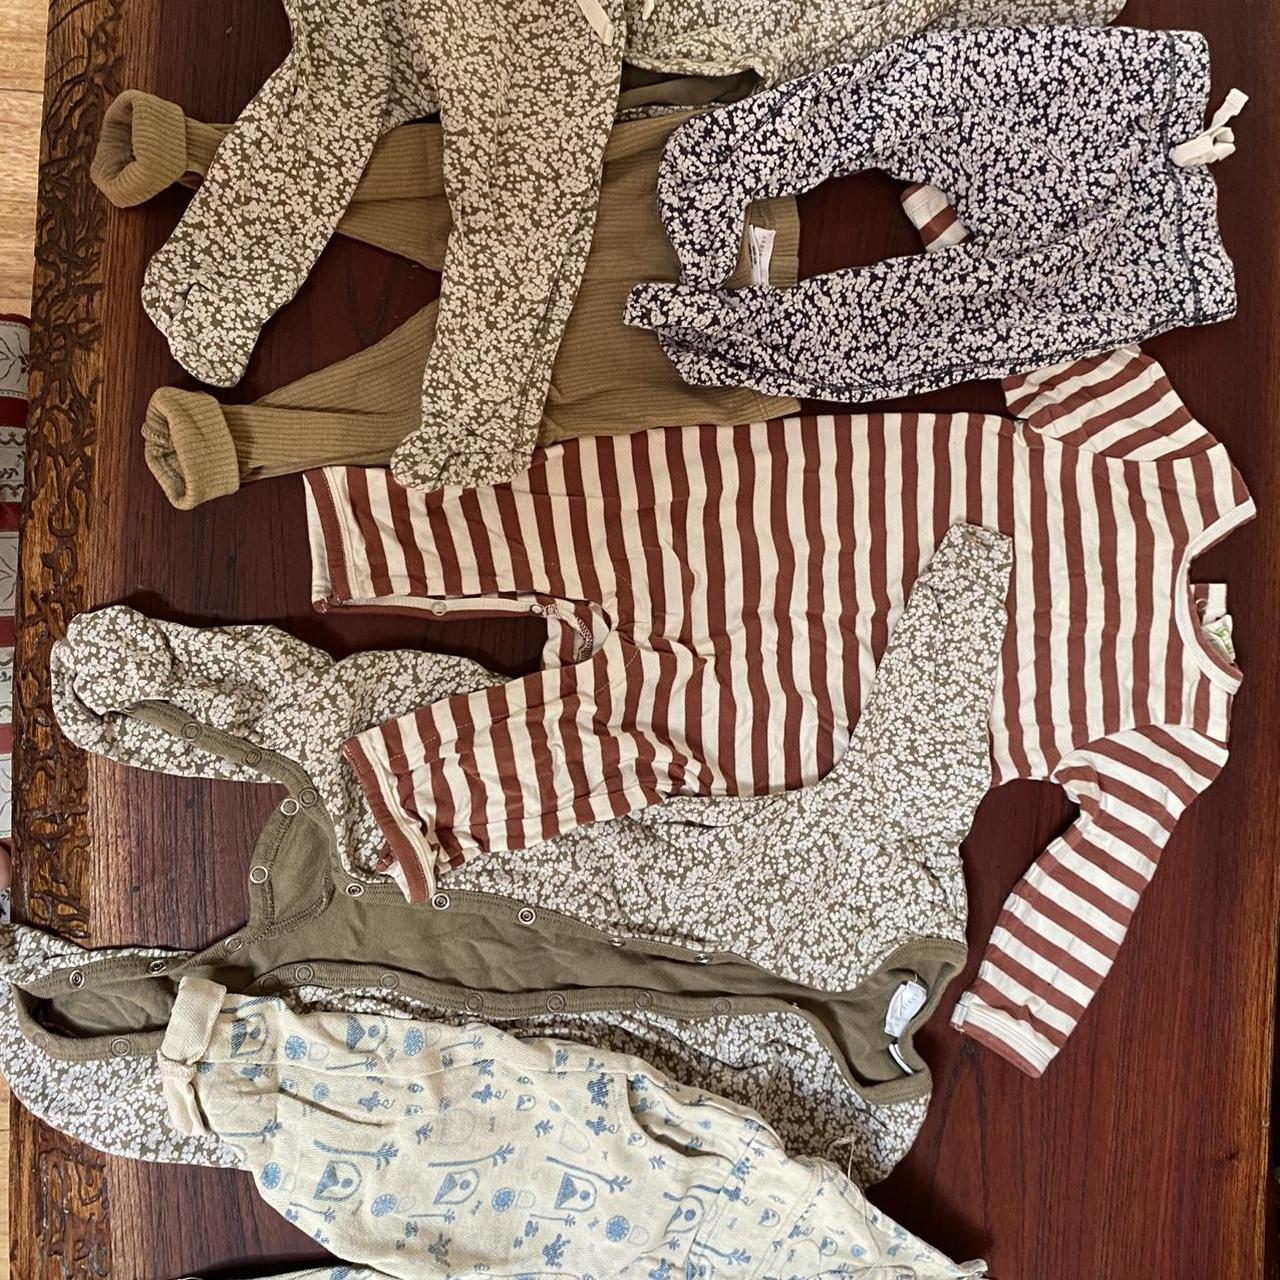 Neutral baby bundle 3-6 months Brands - Jamie Kay,... - Depop